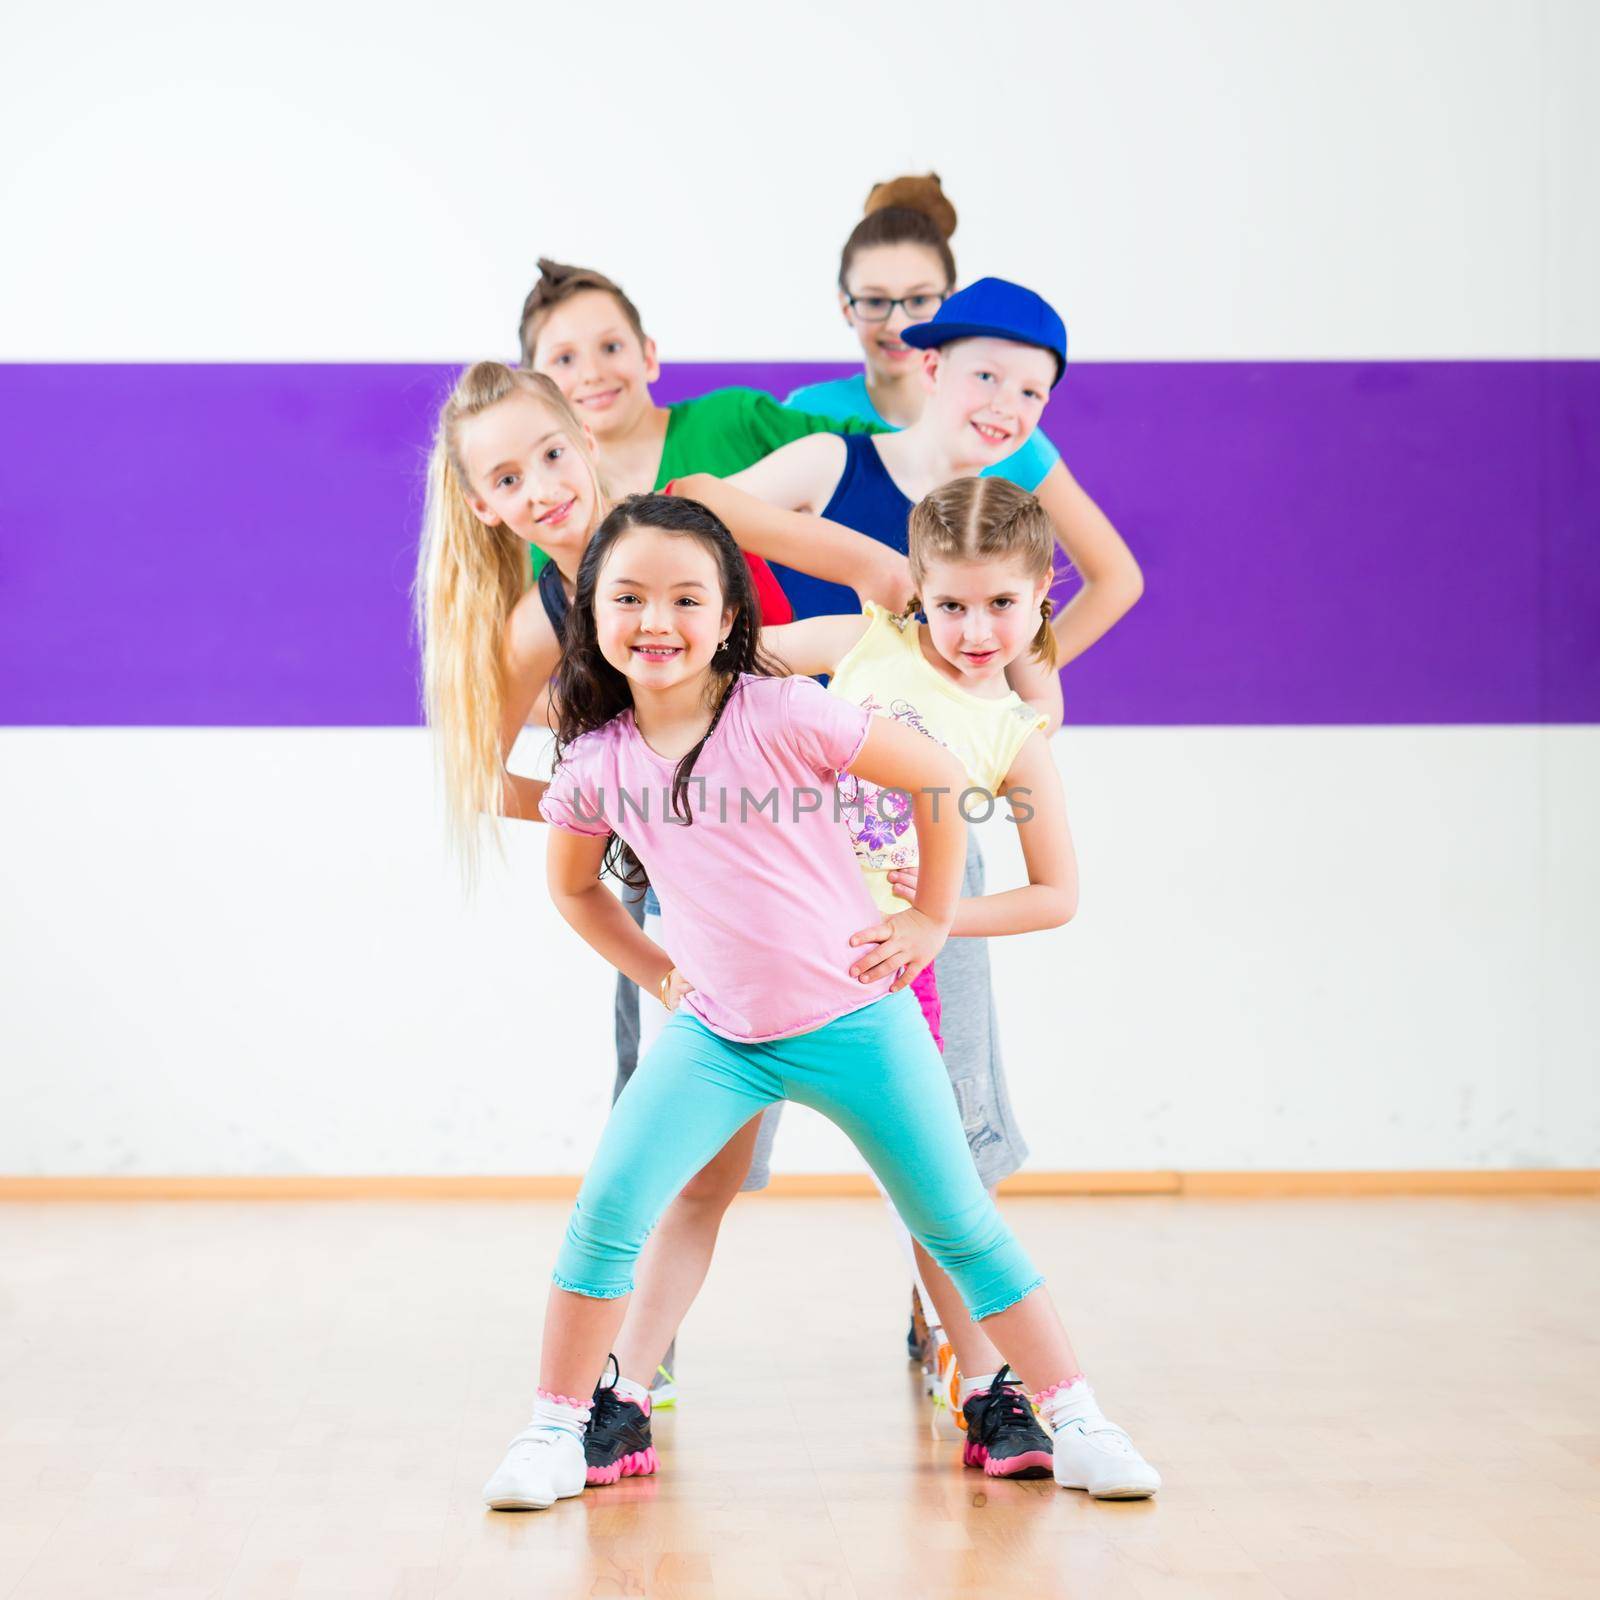 Kids train Zumba fitness in dancing school by Kzenon